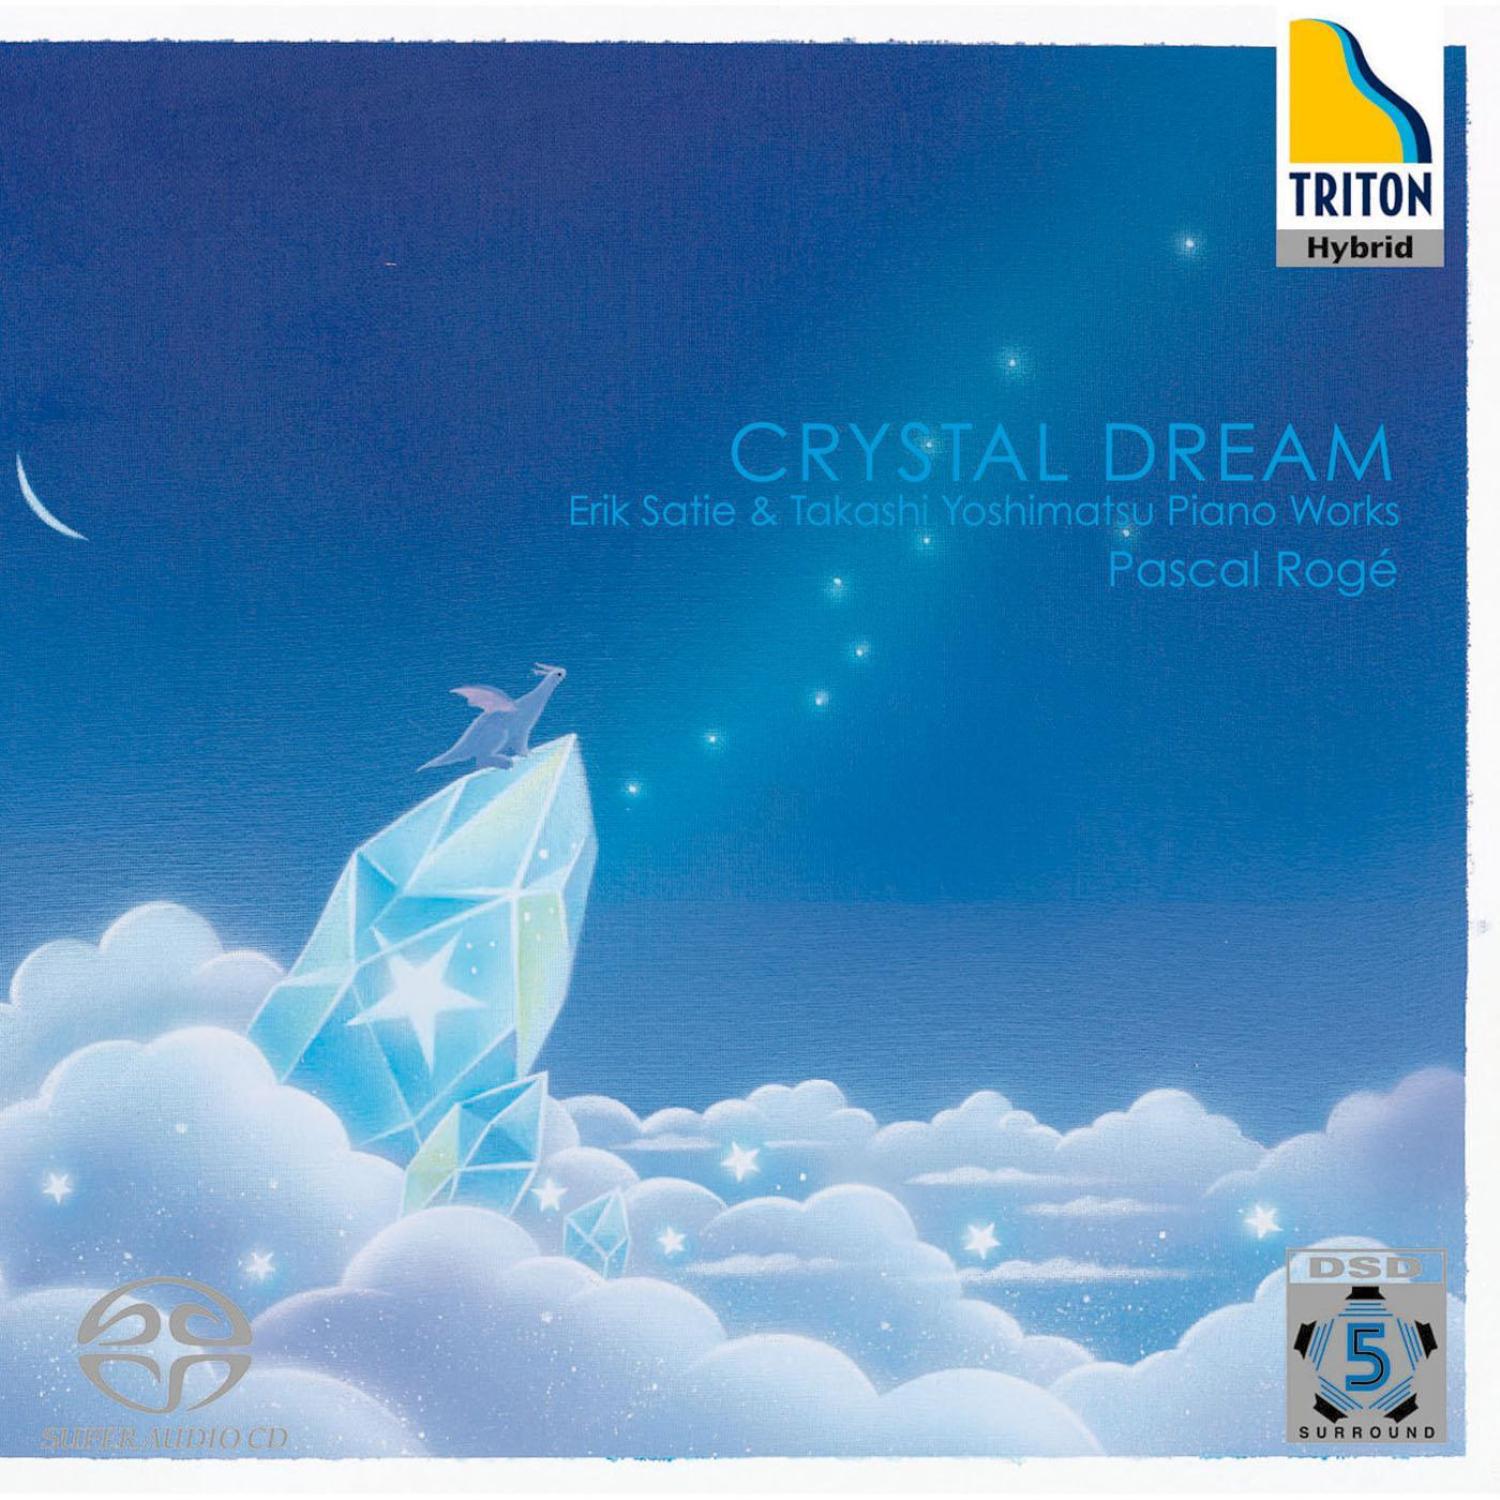 Crystal Dream Erik Satie & Takashi Yoshimatsu Piano Works